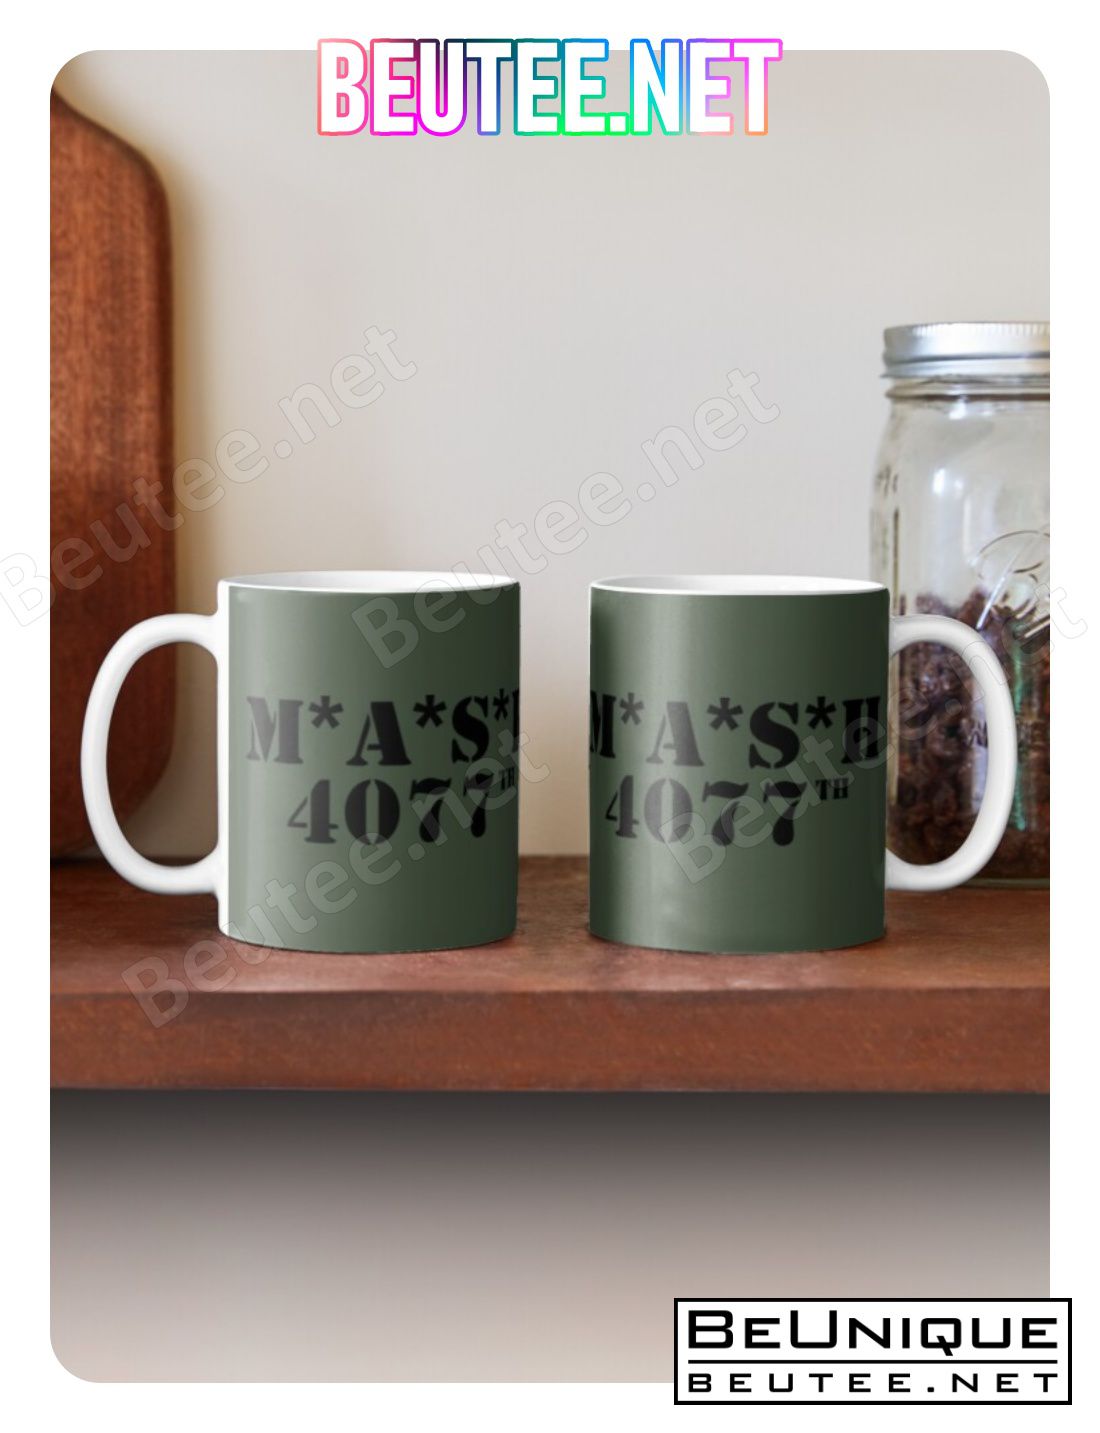 Mash 4077 Coffee Mug